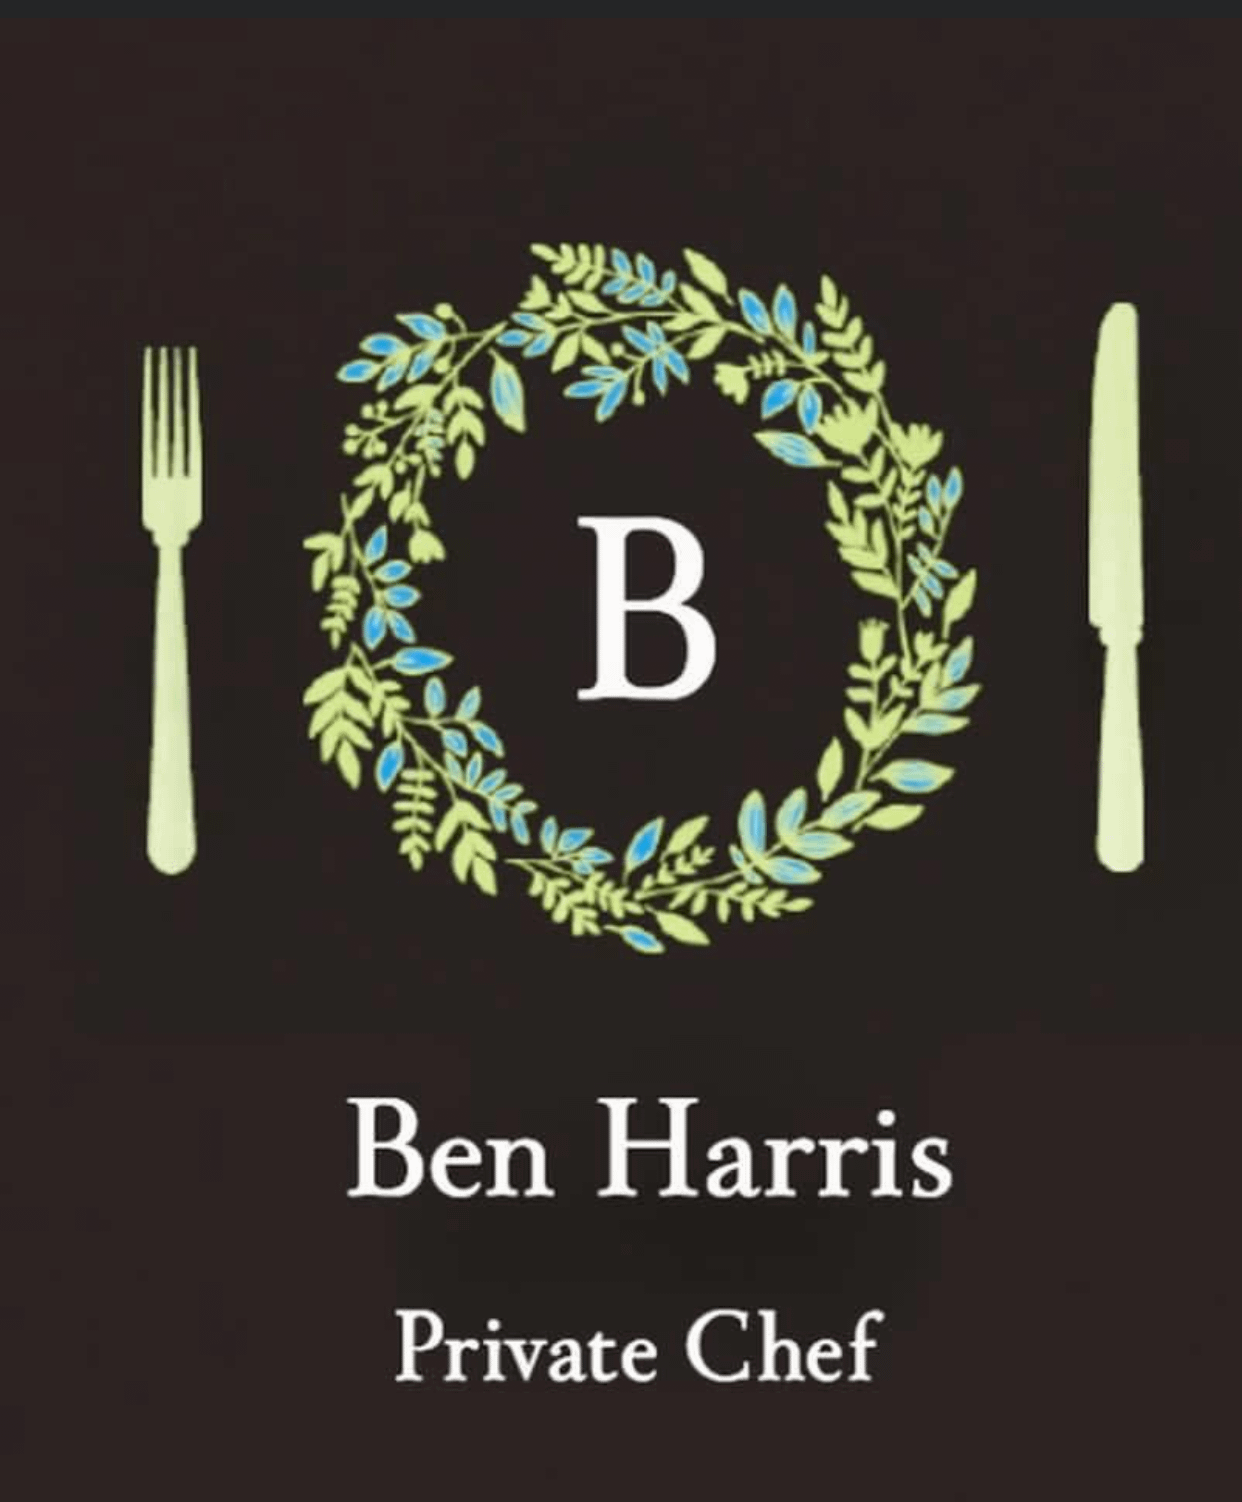 Chef Ben Harris